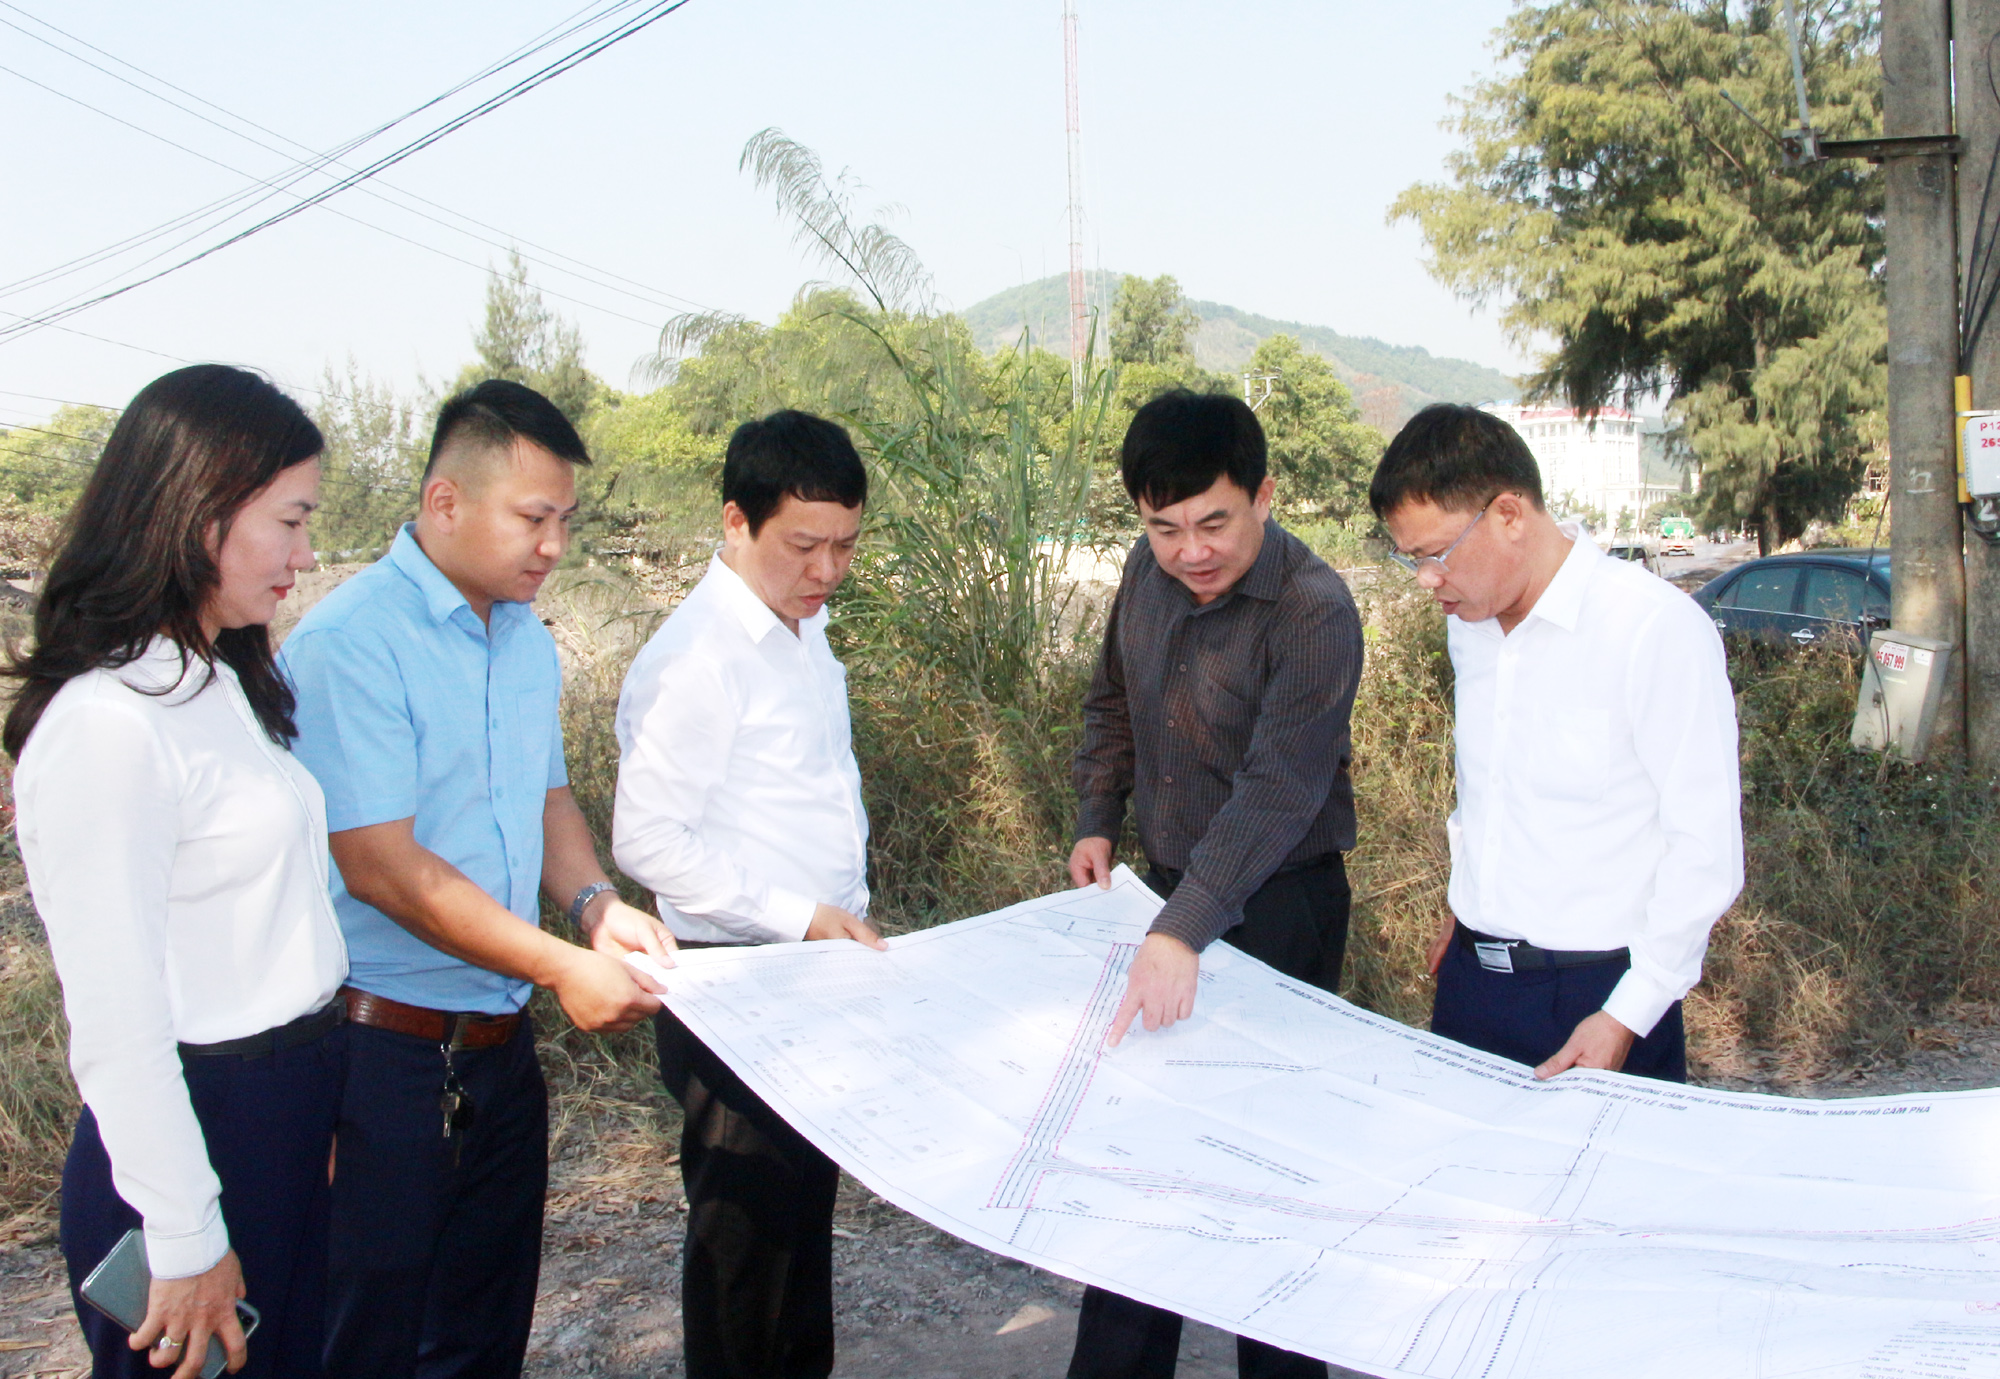 Đồng chí Ngô Hoàng Ngân, Phó Bí thư Thường trực Tỉnh ủy, kiểm tra tiến độ thi công Cụm công nghiệp Cẩm Thịnh.